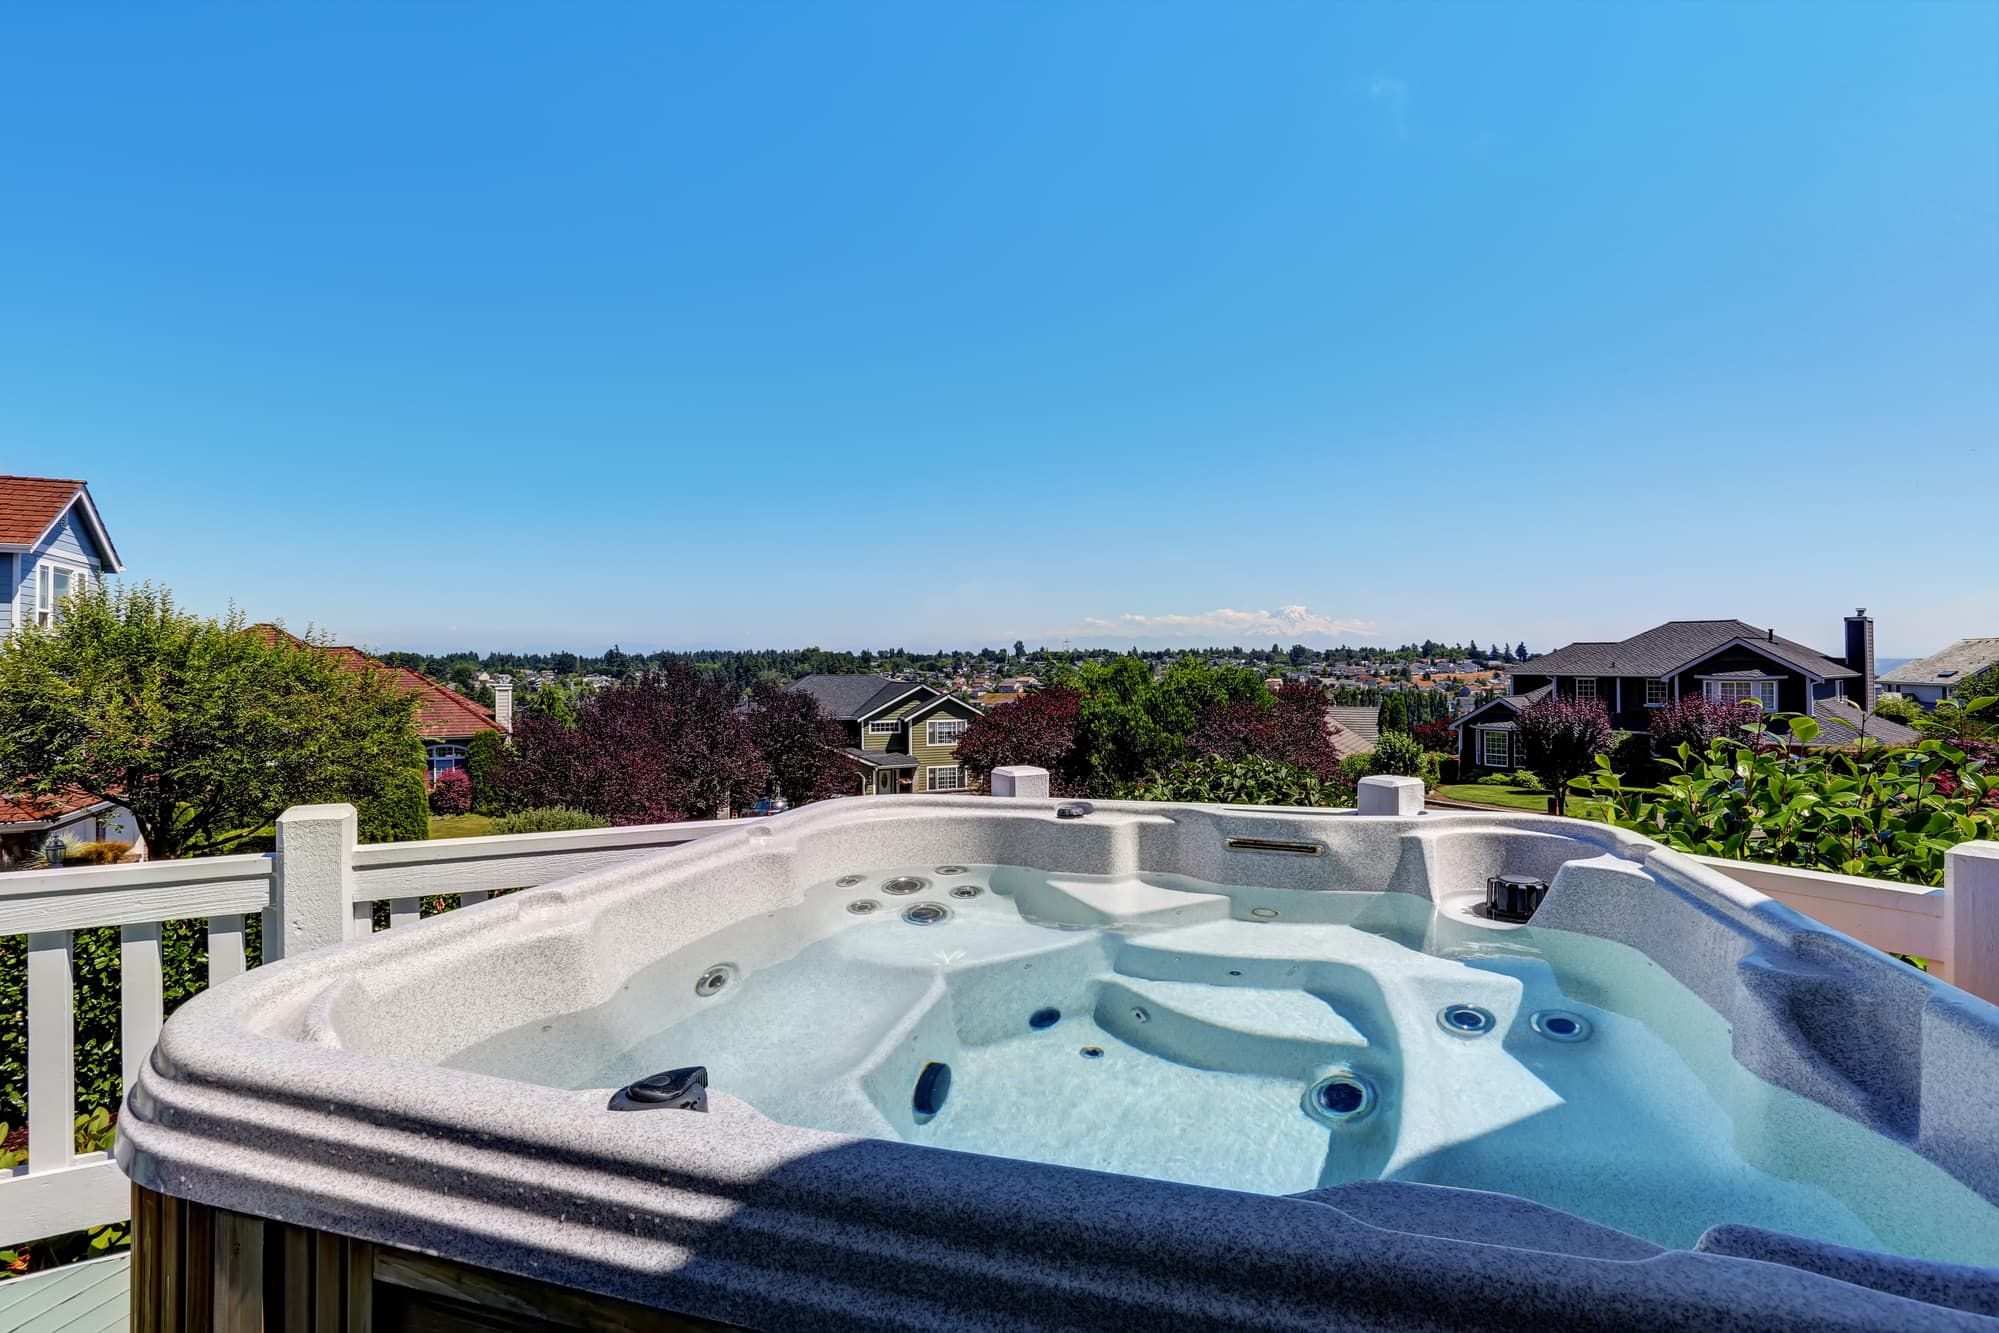 Close-up of hot tub. Luxury house exterior. Blue sky background. Northwest, USA